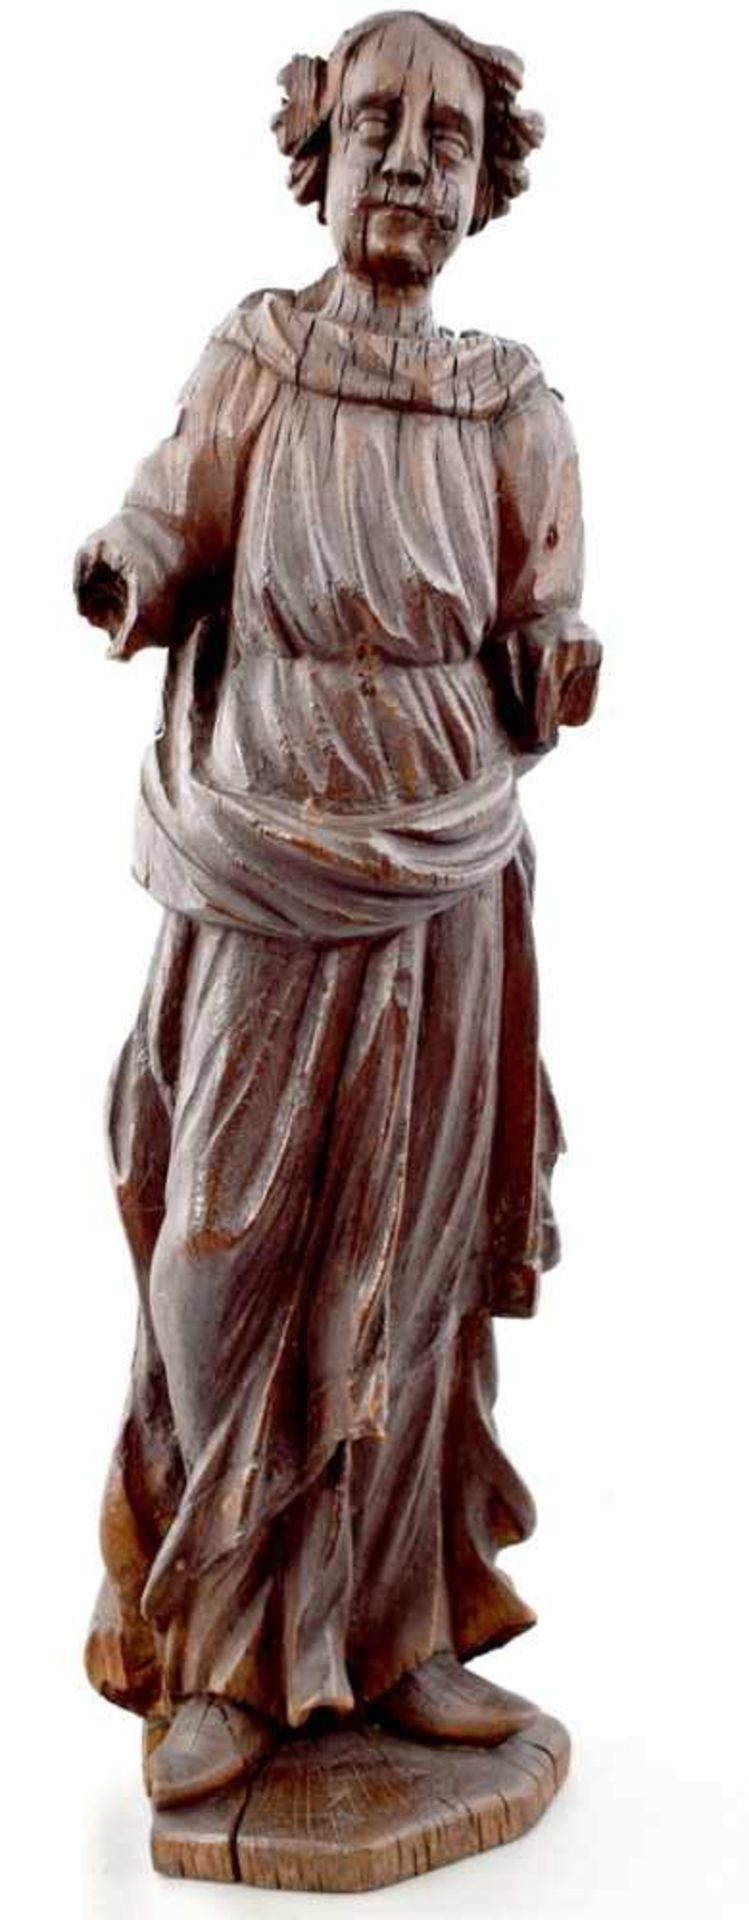 Heilige Katharina Eiche, geschnitzt, auf Sockel stehend, faltenreiches Gewand, H 61 cm, um 1600